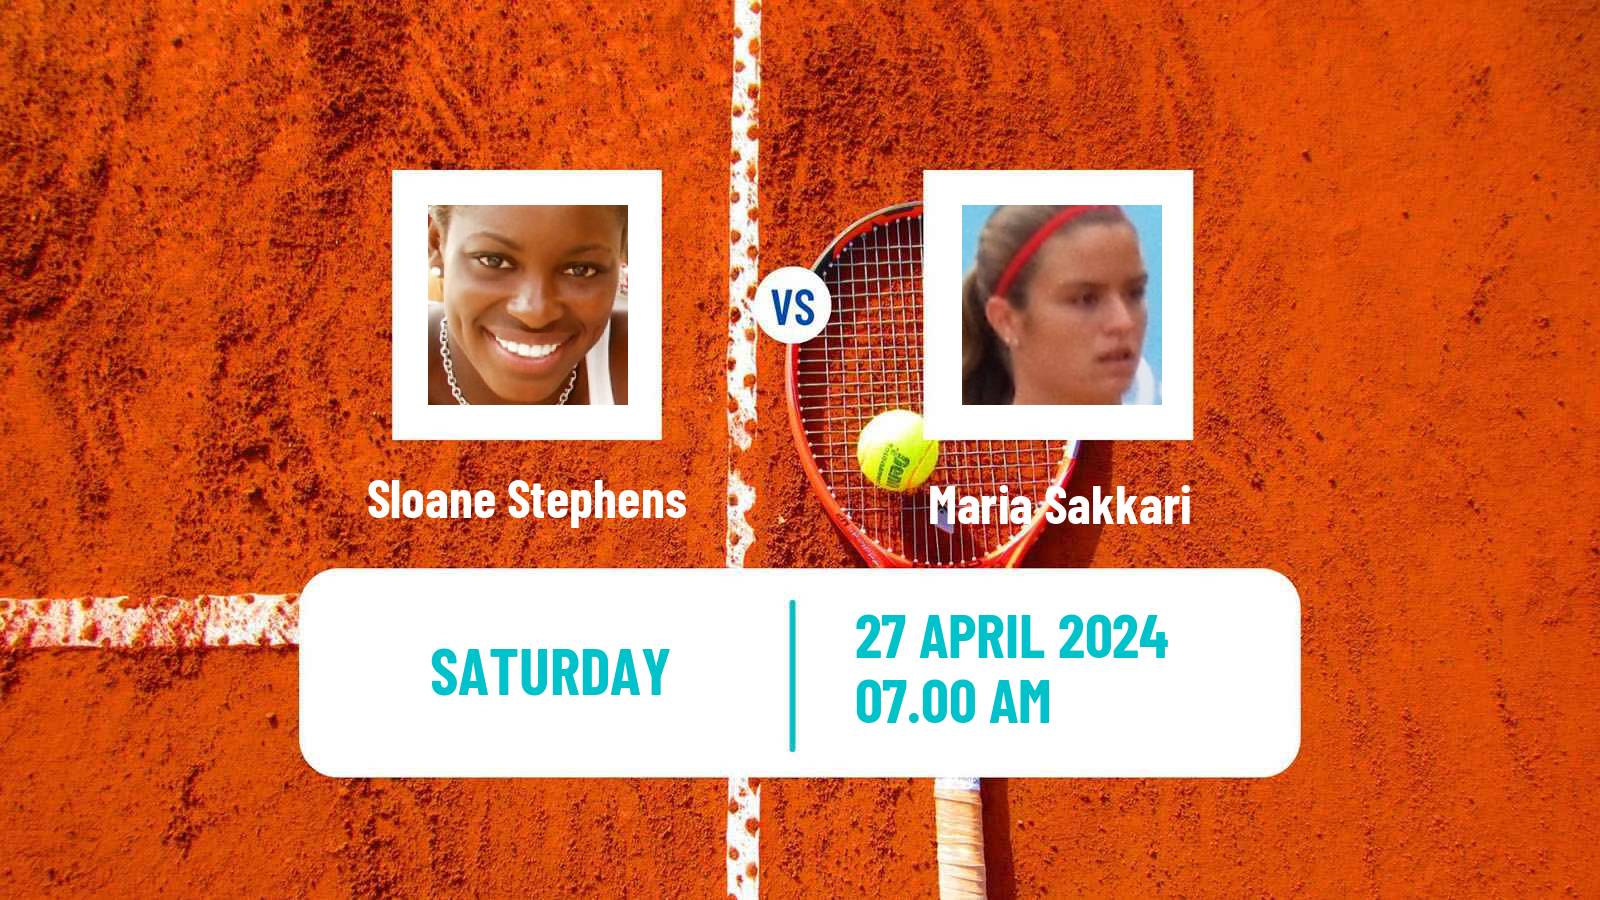 Tennis WTA Madrid Sloane Stephens - Maria Sakkari